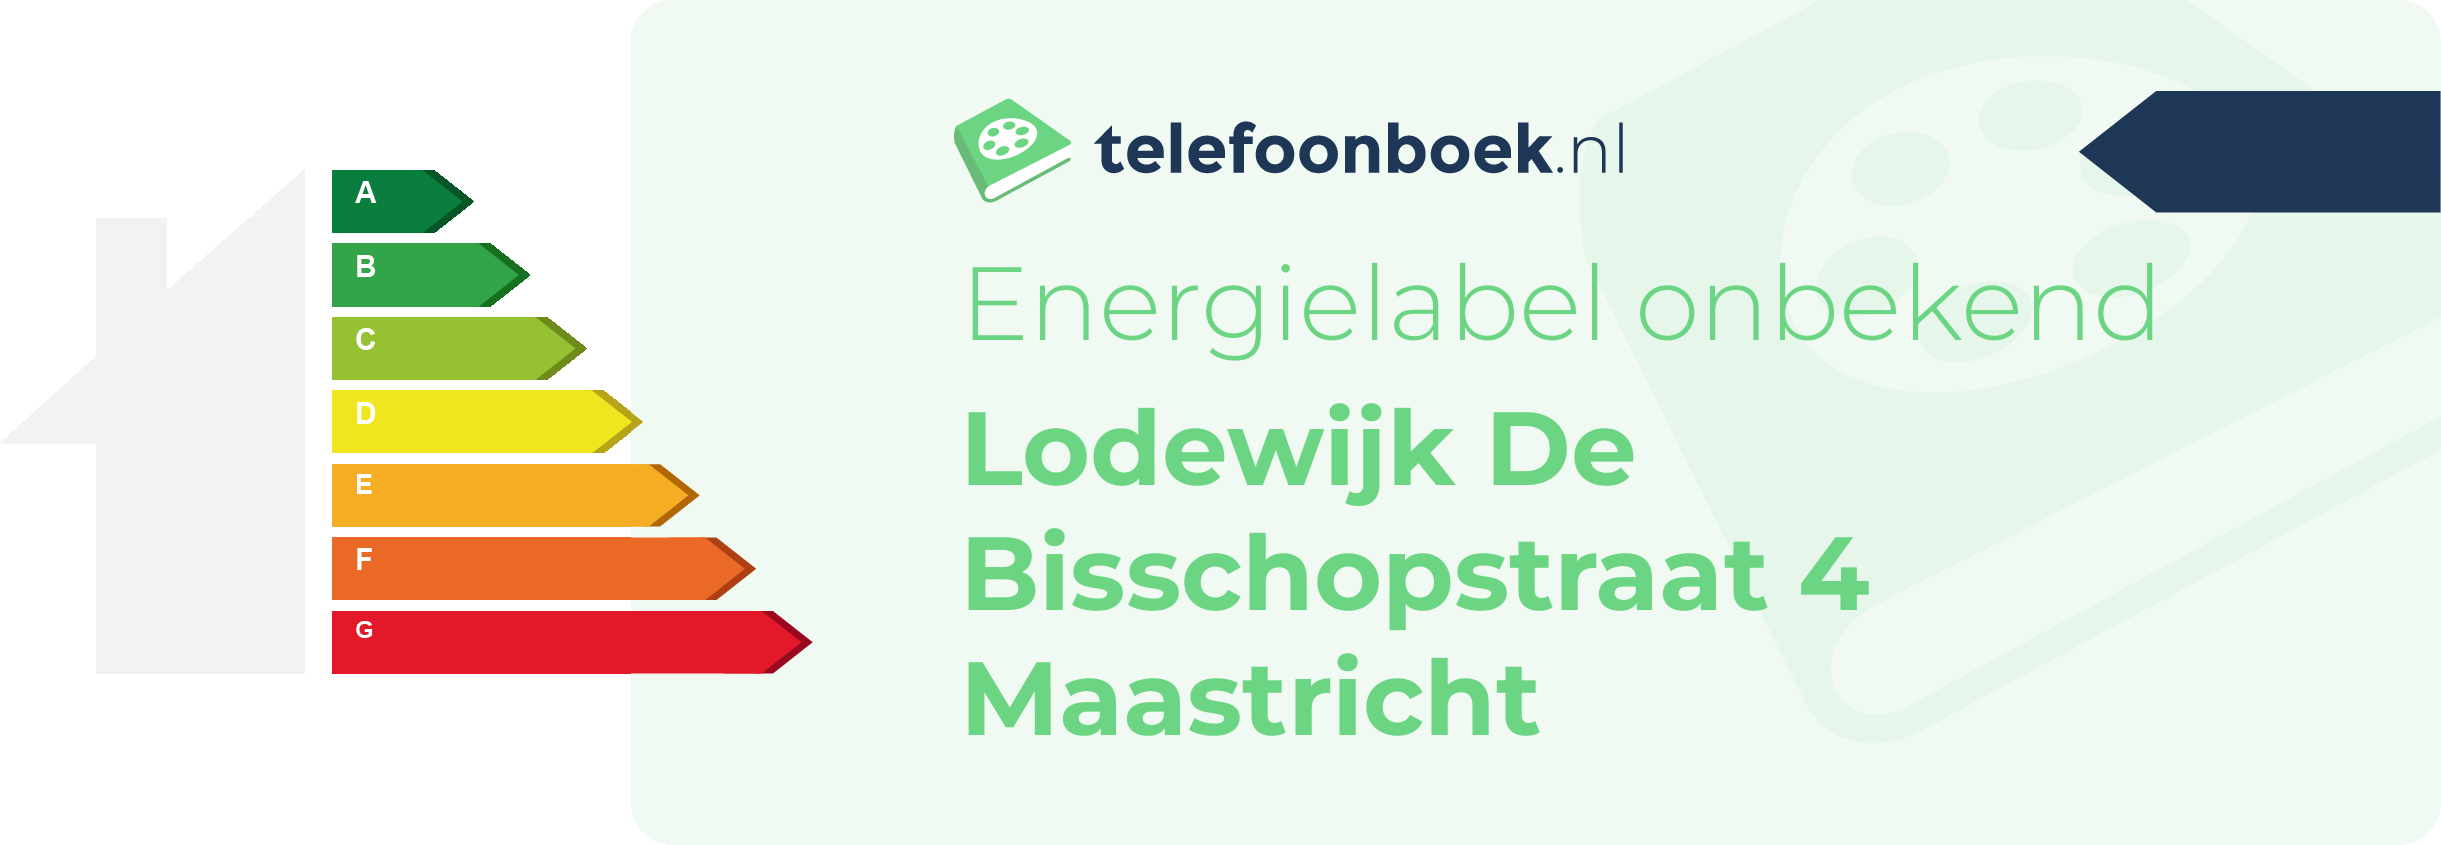 Energielabel Lodewijk De Bisschopstraat 4 Maastricht